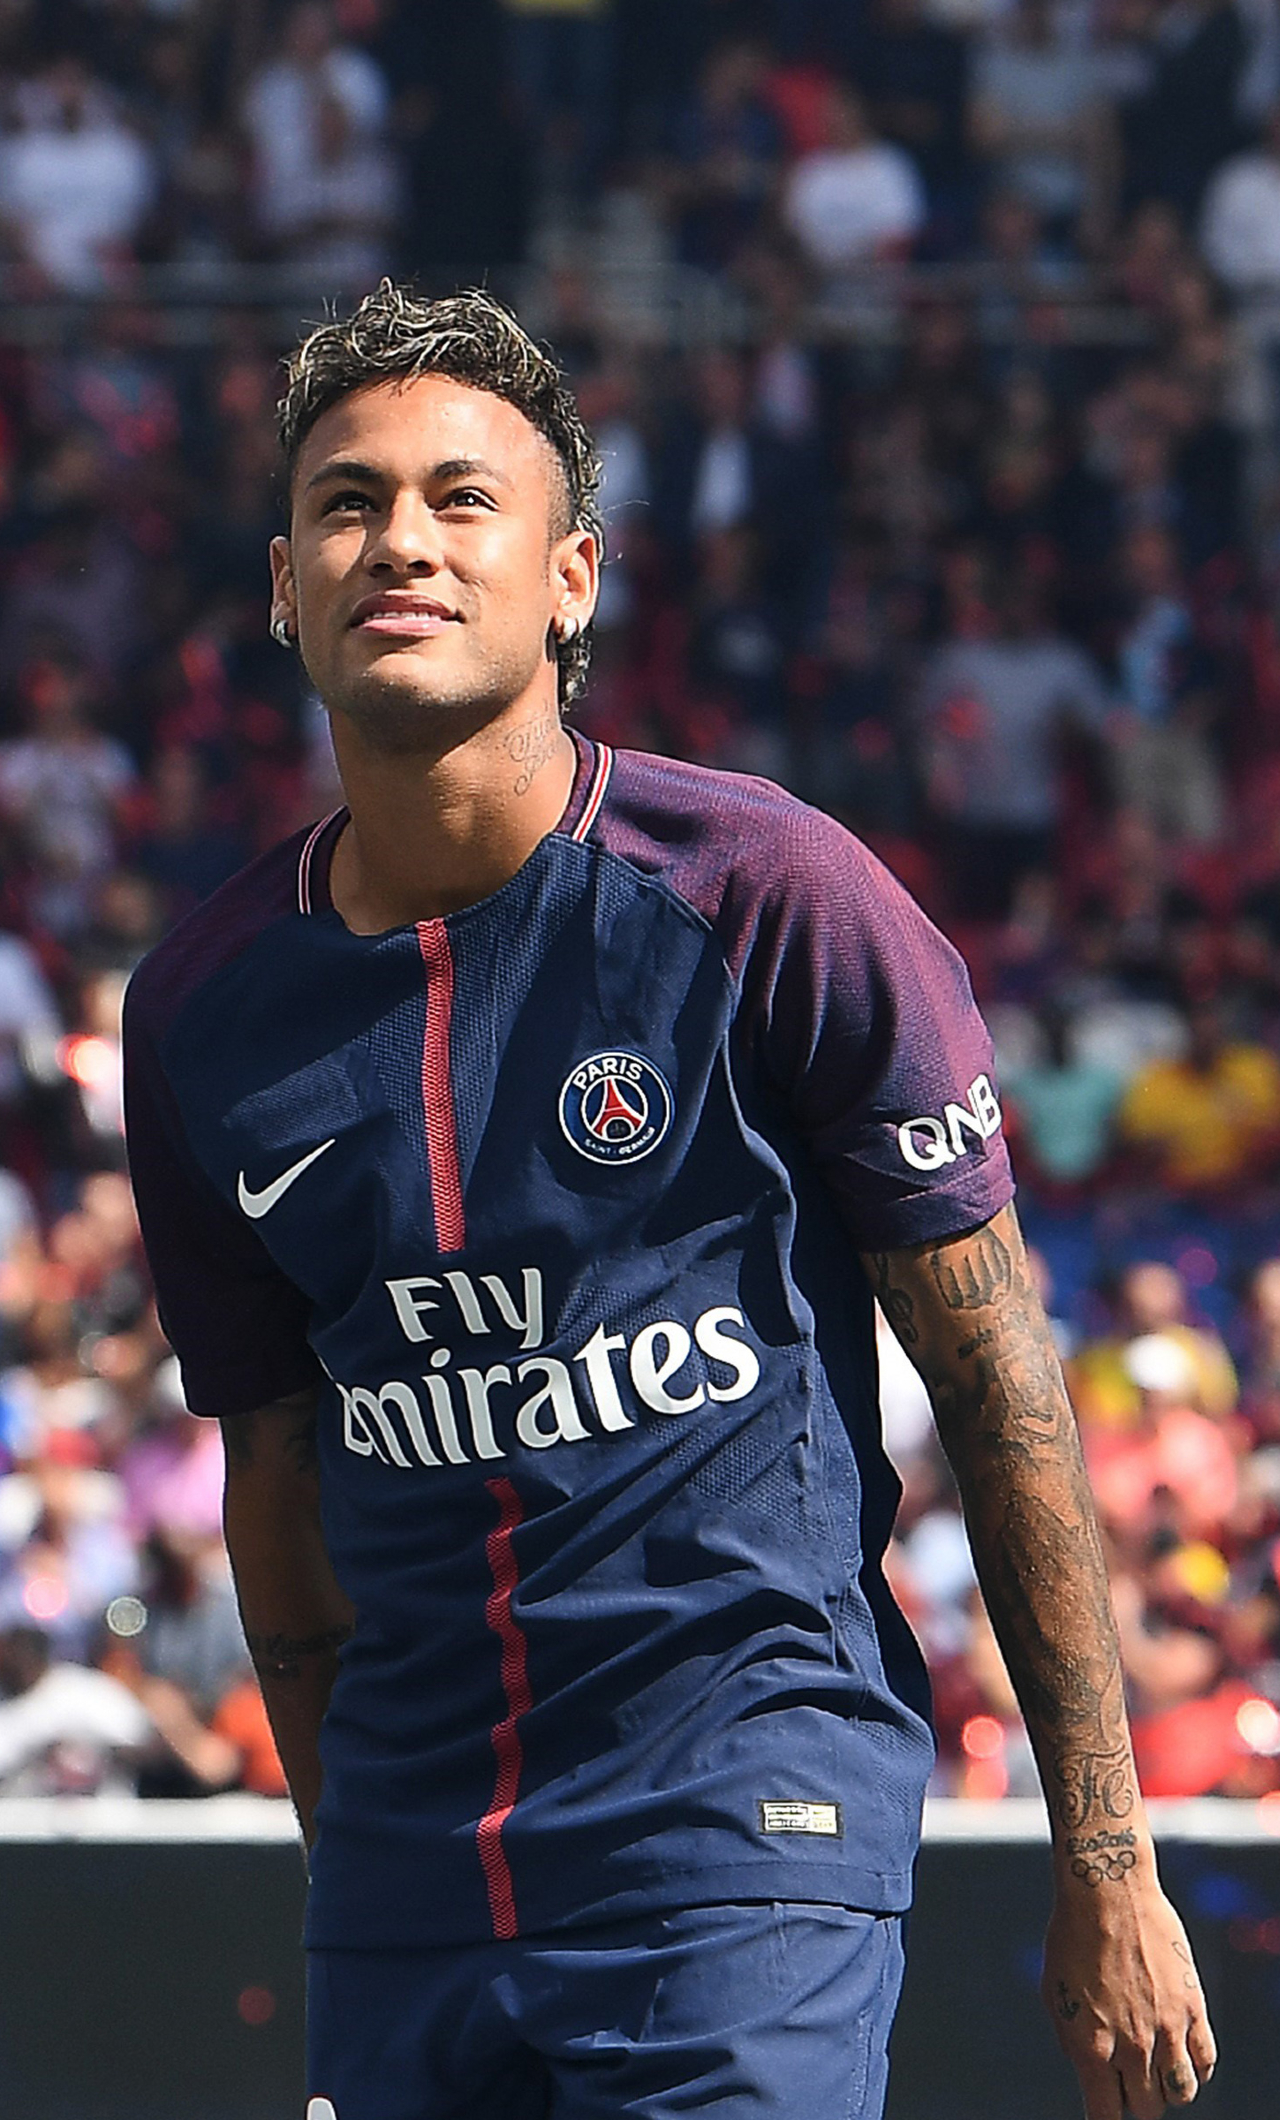 Ảnh Neymar - Cầu Thủ Bóng Đá Ngầu, Đẹp Nhất Tặng Fan